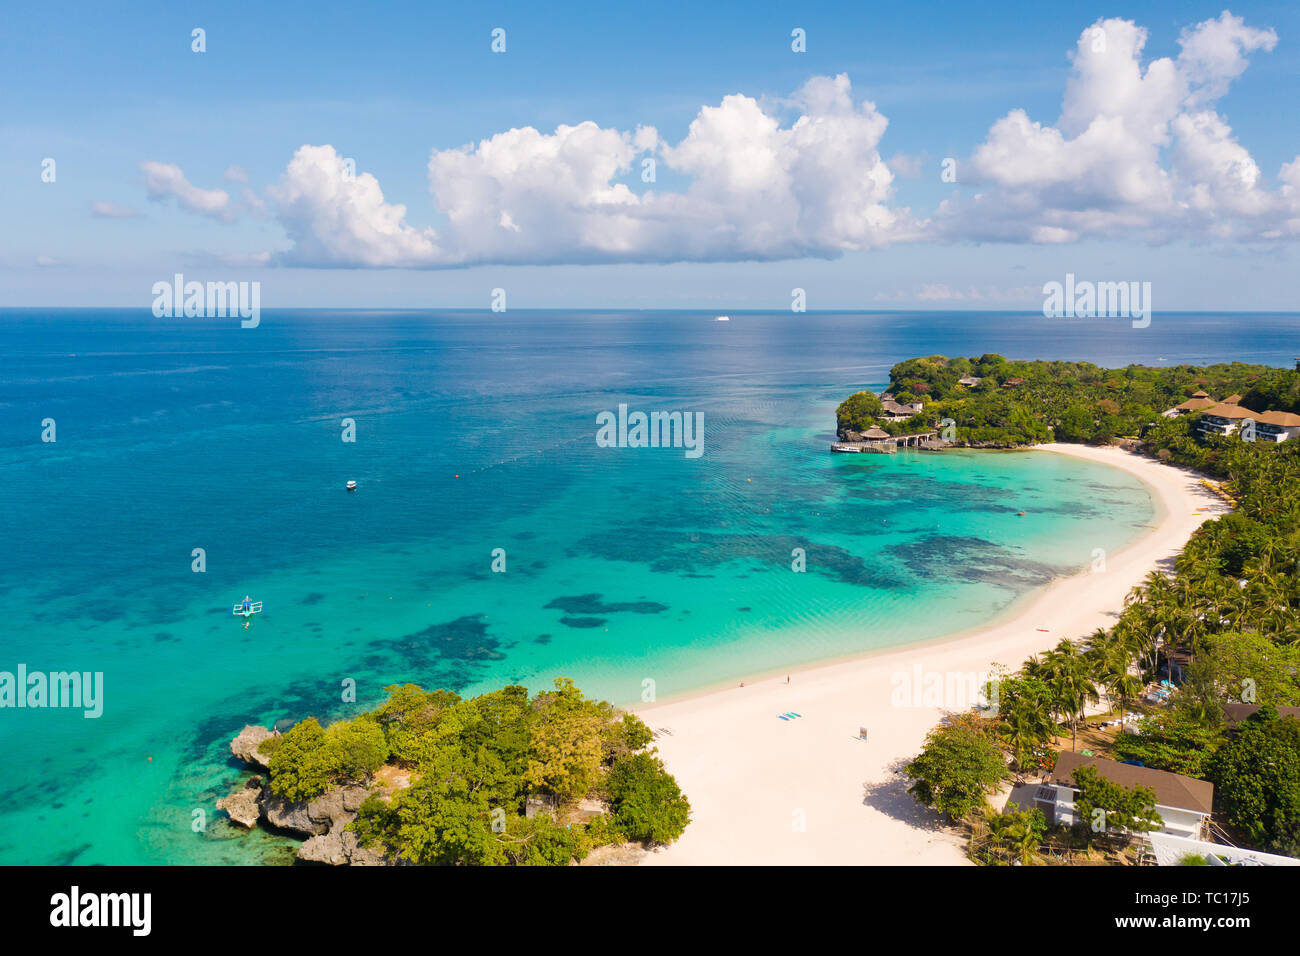 La bella Punta Bunga Beach en la isla de Boracay, Filipinas.Hoteles cerca de la playa en tiempo soleado. La costa de la isla de Boracay para turistas. Foto de stock